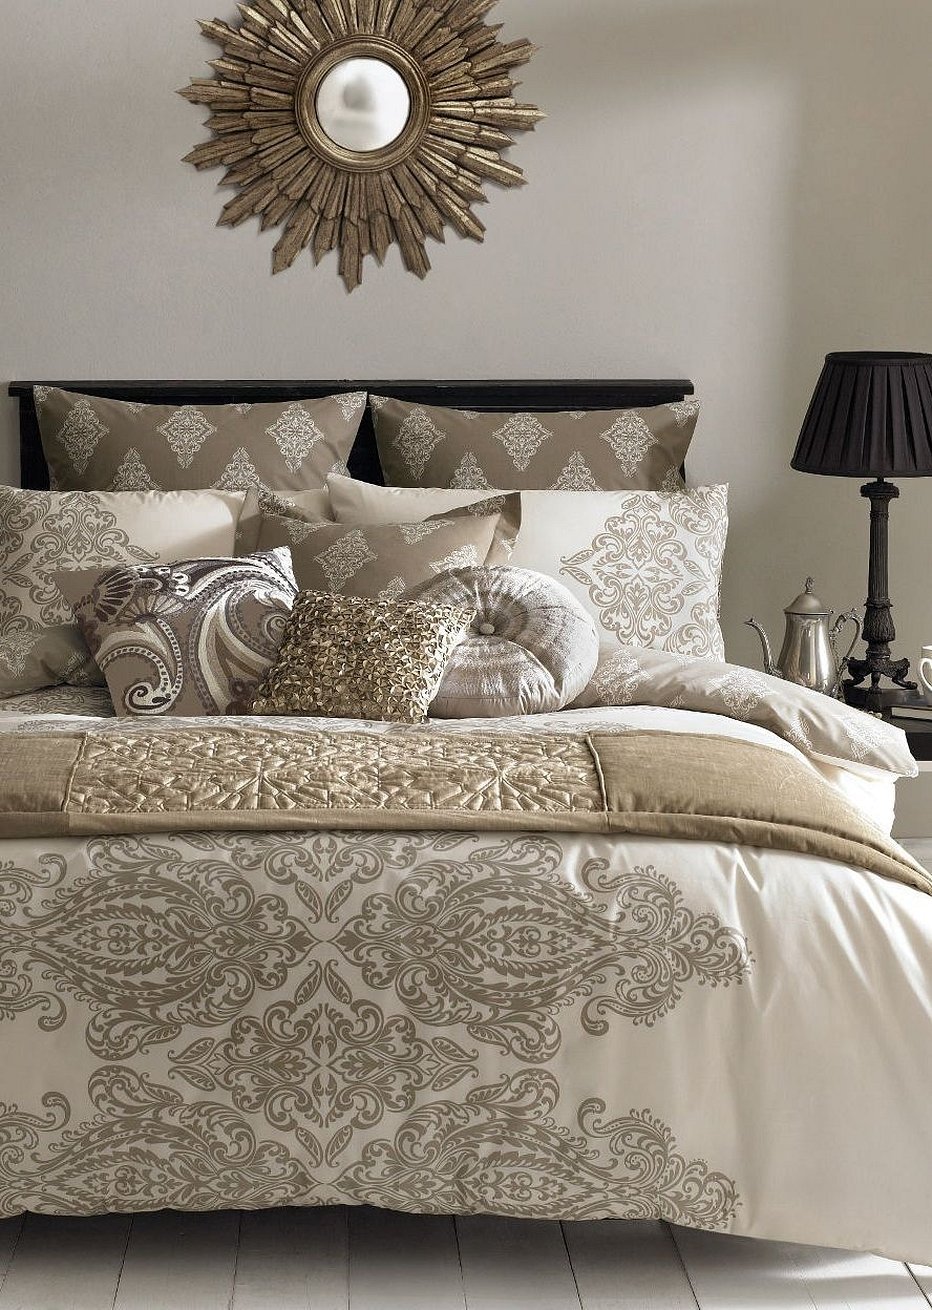 Постельное белье стиле дамаск на кровати